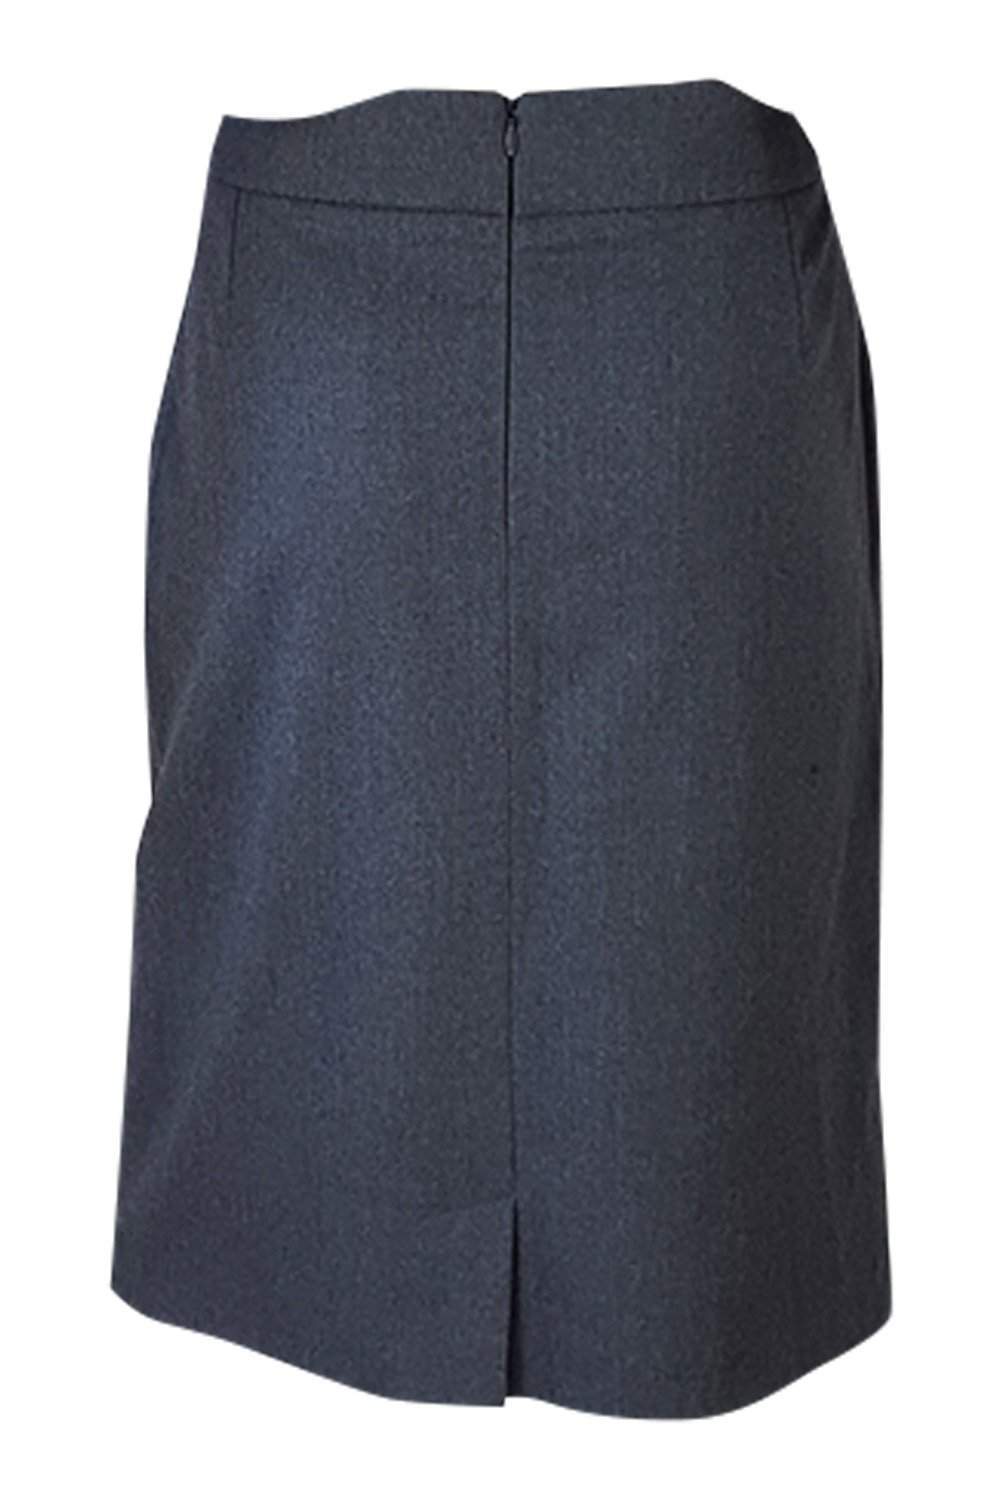 BAMFORD Grey Wool Knee Length Mini Skirt (42)-Bamford-The Freperie